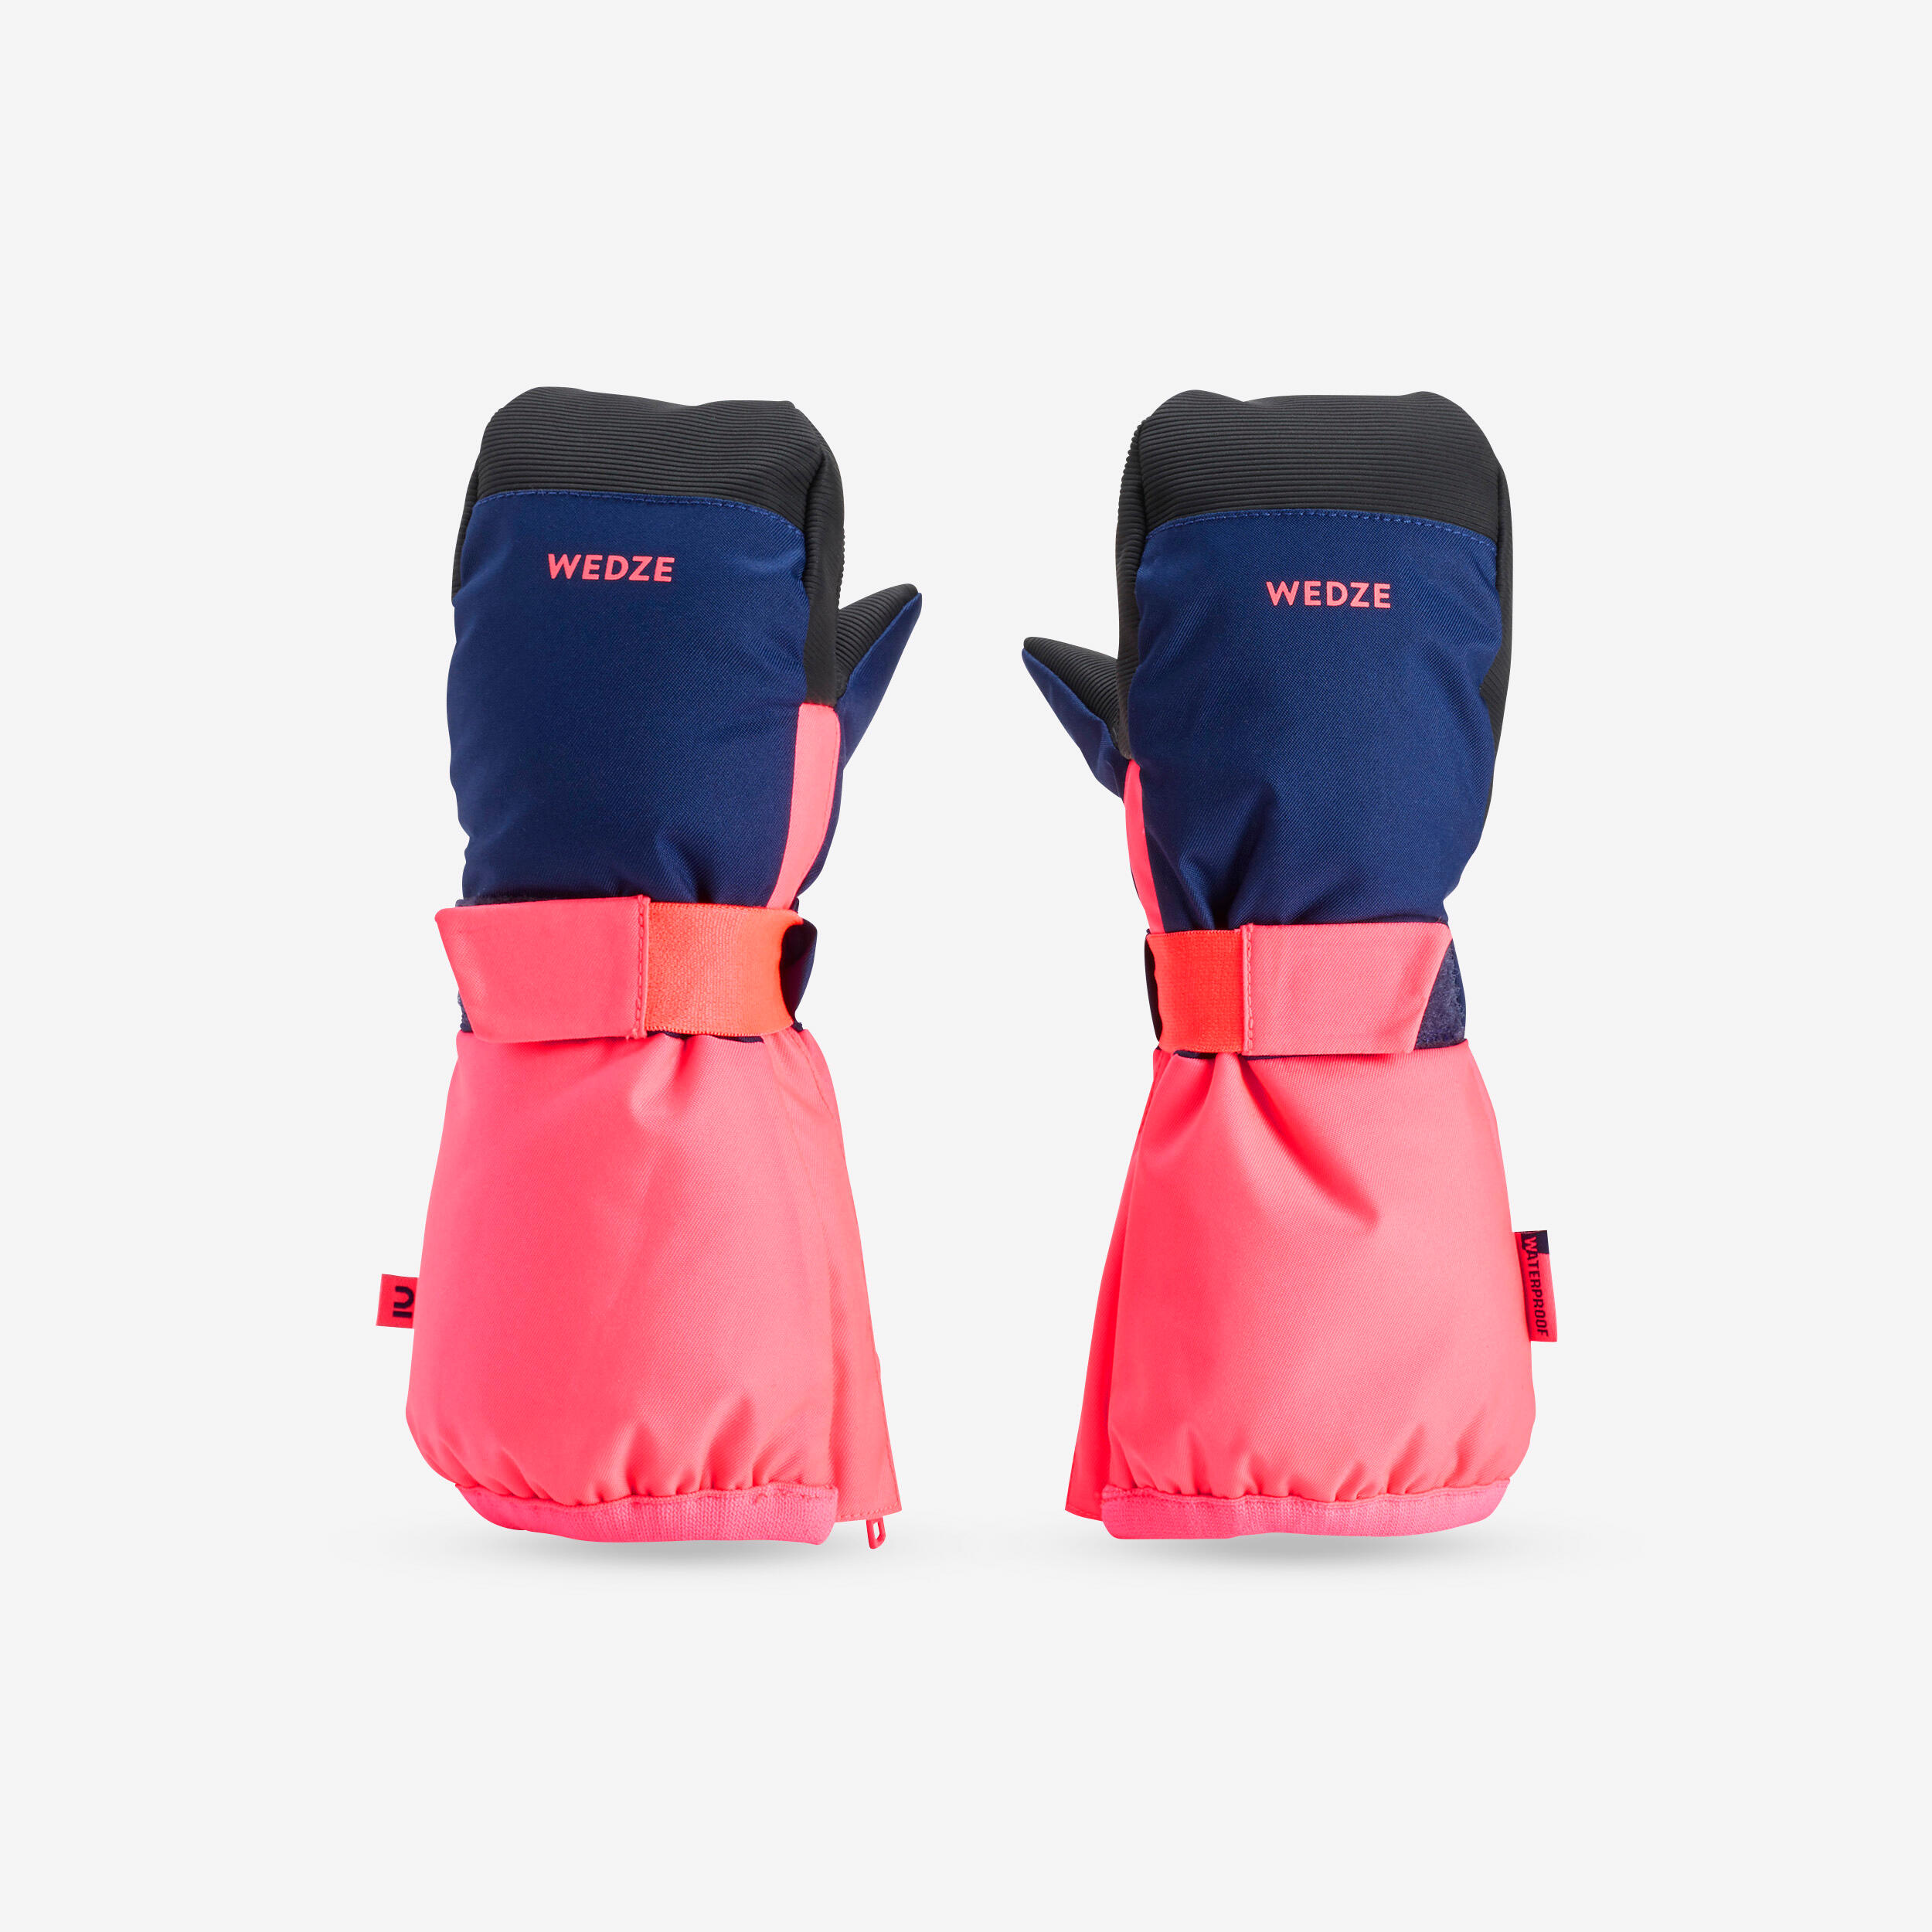 moufles de ski enfant chaudes et imperméables bleu et rose - wedze